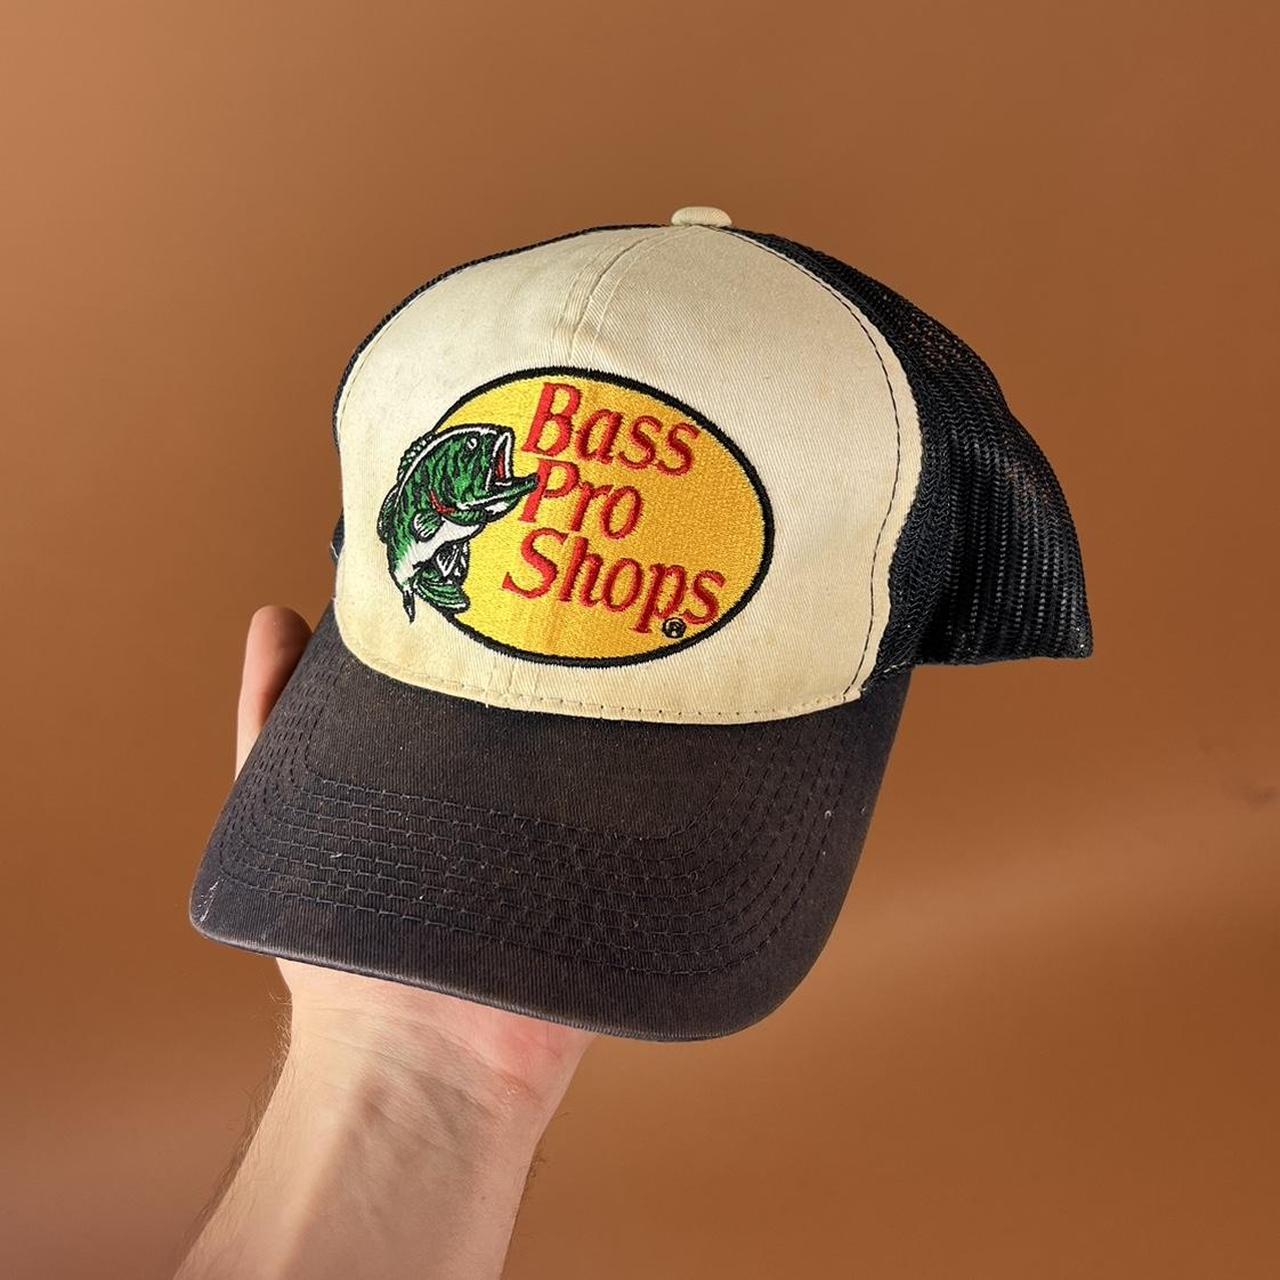 Bass Pro Shops Retro Hats for Men